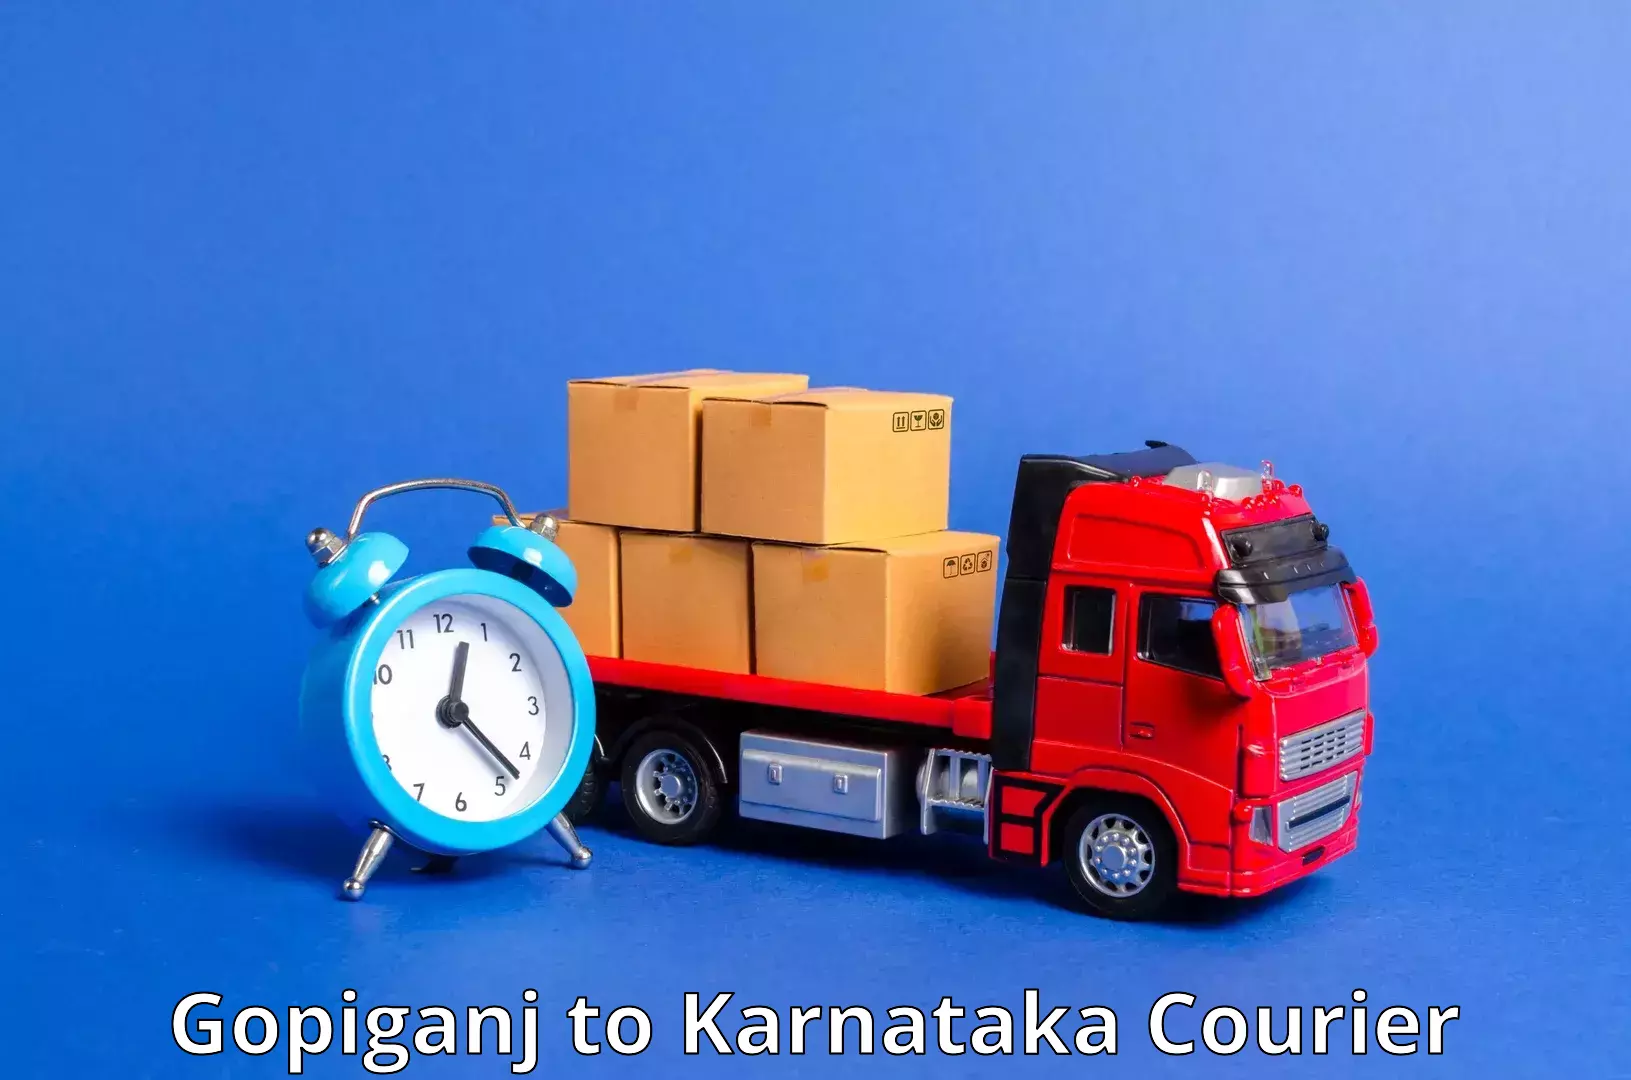 Cost-effective courier solutions Gopiganj to Kalaburagi